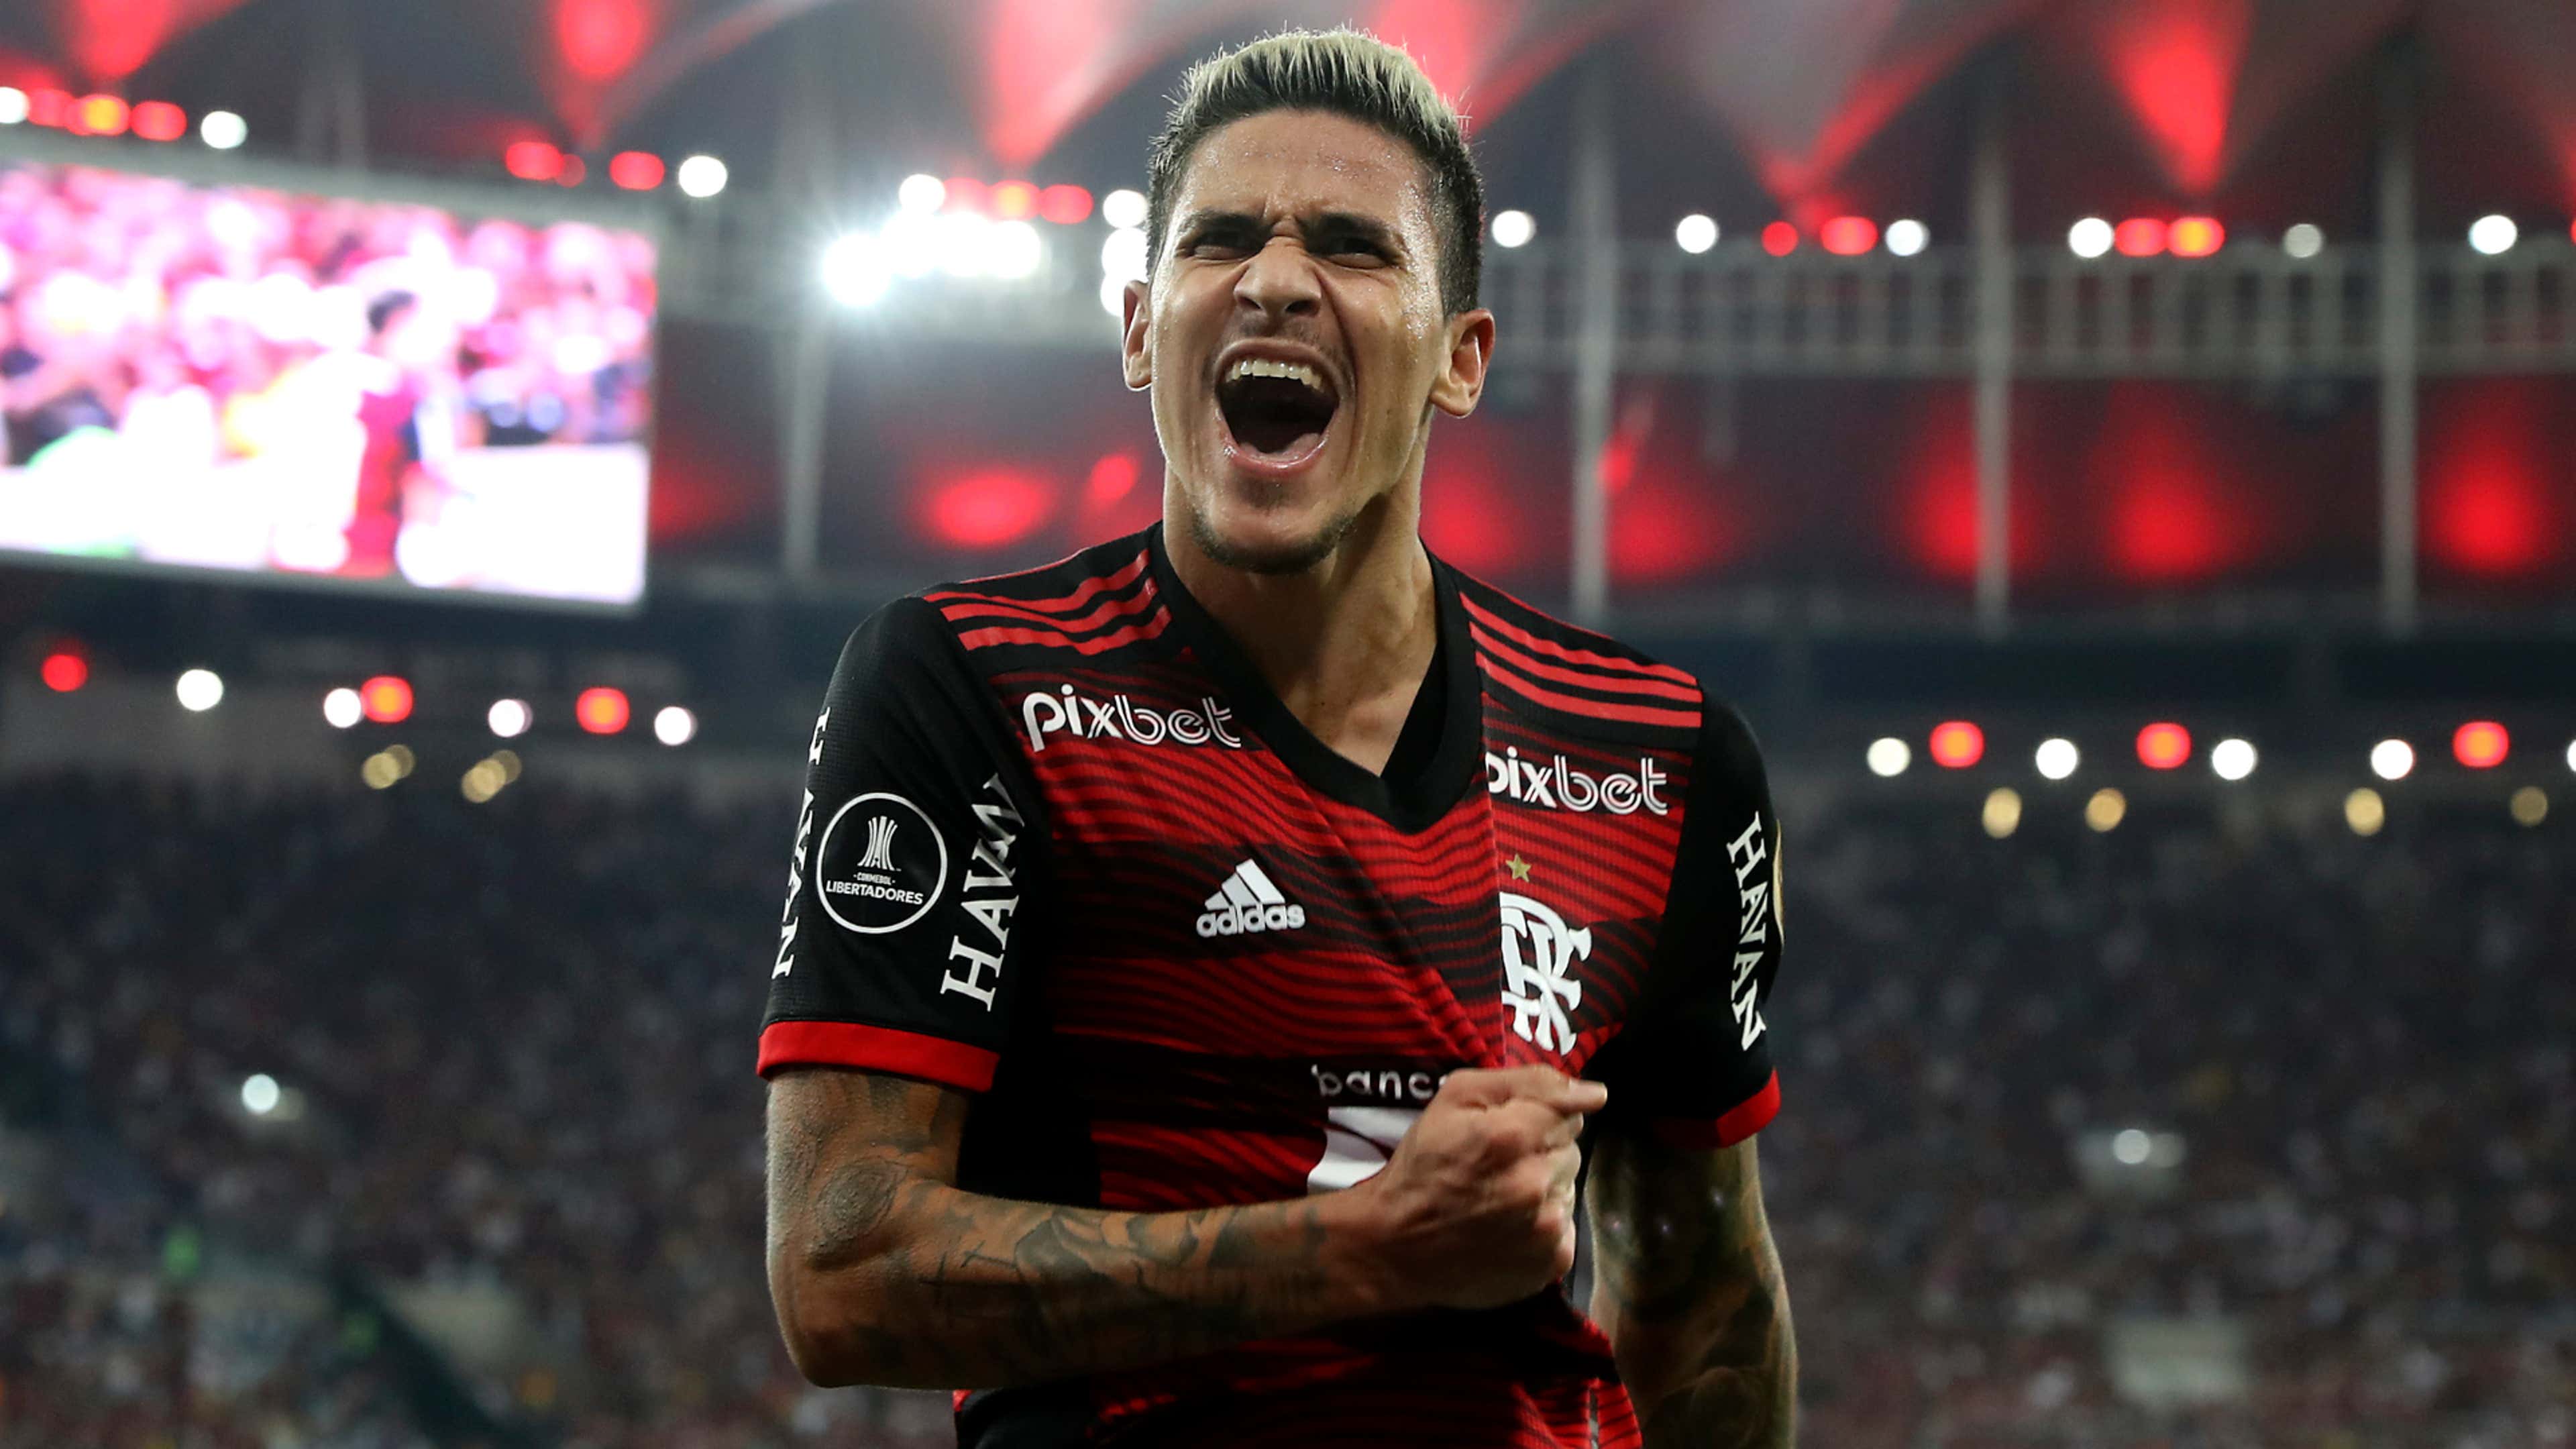 Flamengo é 4° clube brasileiro com mais classificações à Libertadores